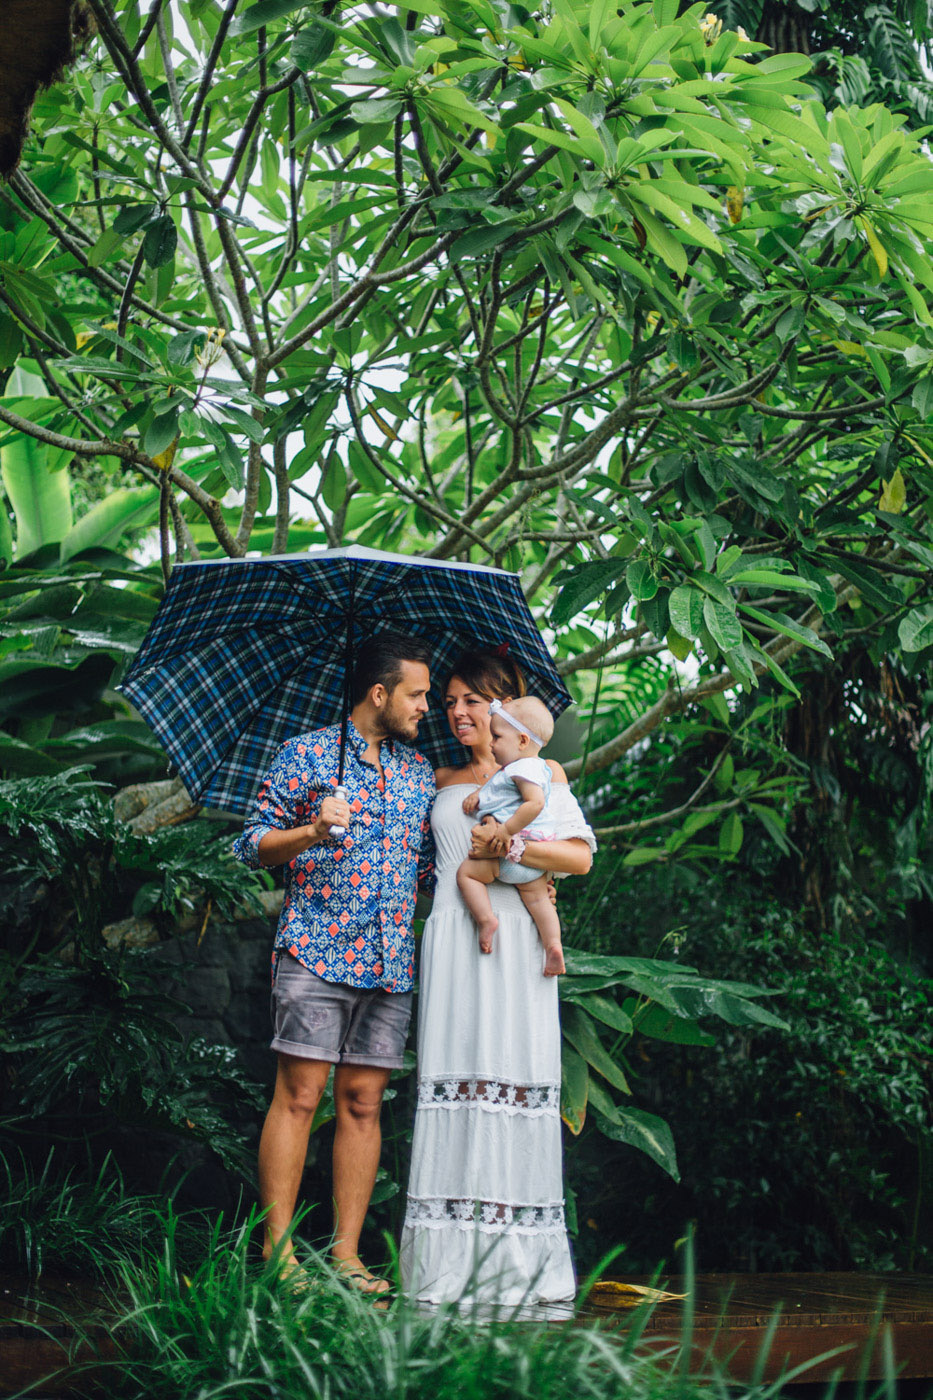 Фотосессия с маленьким ребенком в дождь. Мама, папа и ребенок стоят под синим клетчатым зонтом. Вокруг джунгли и зелень. Тропический дождь